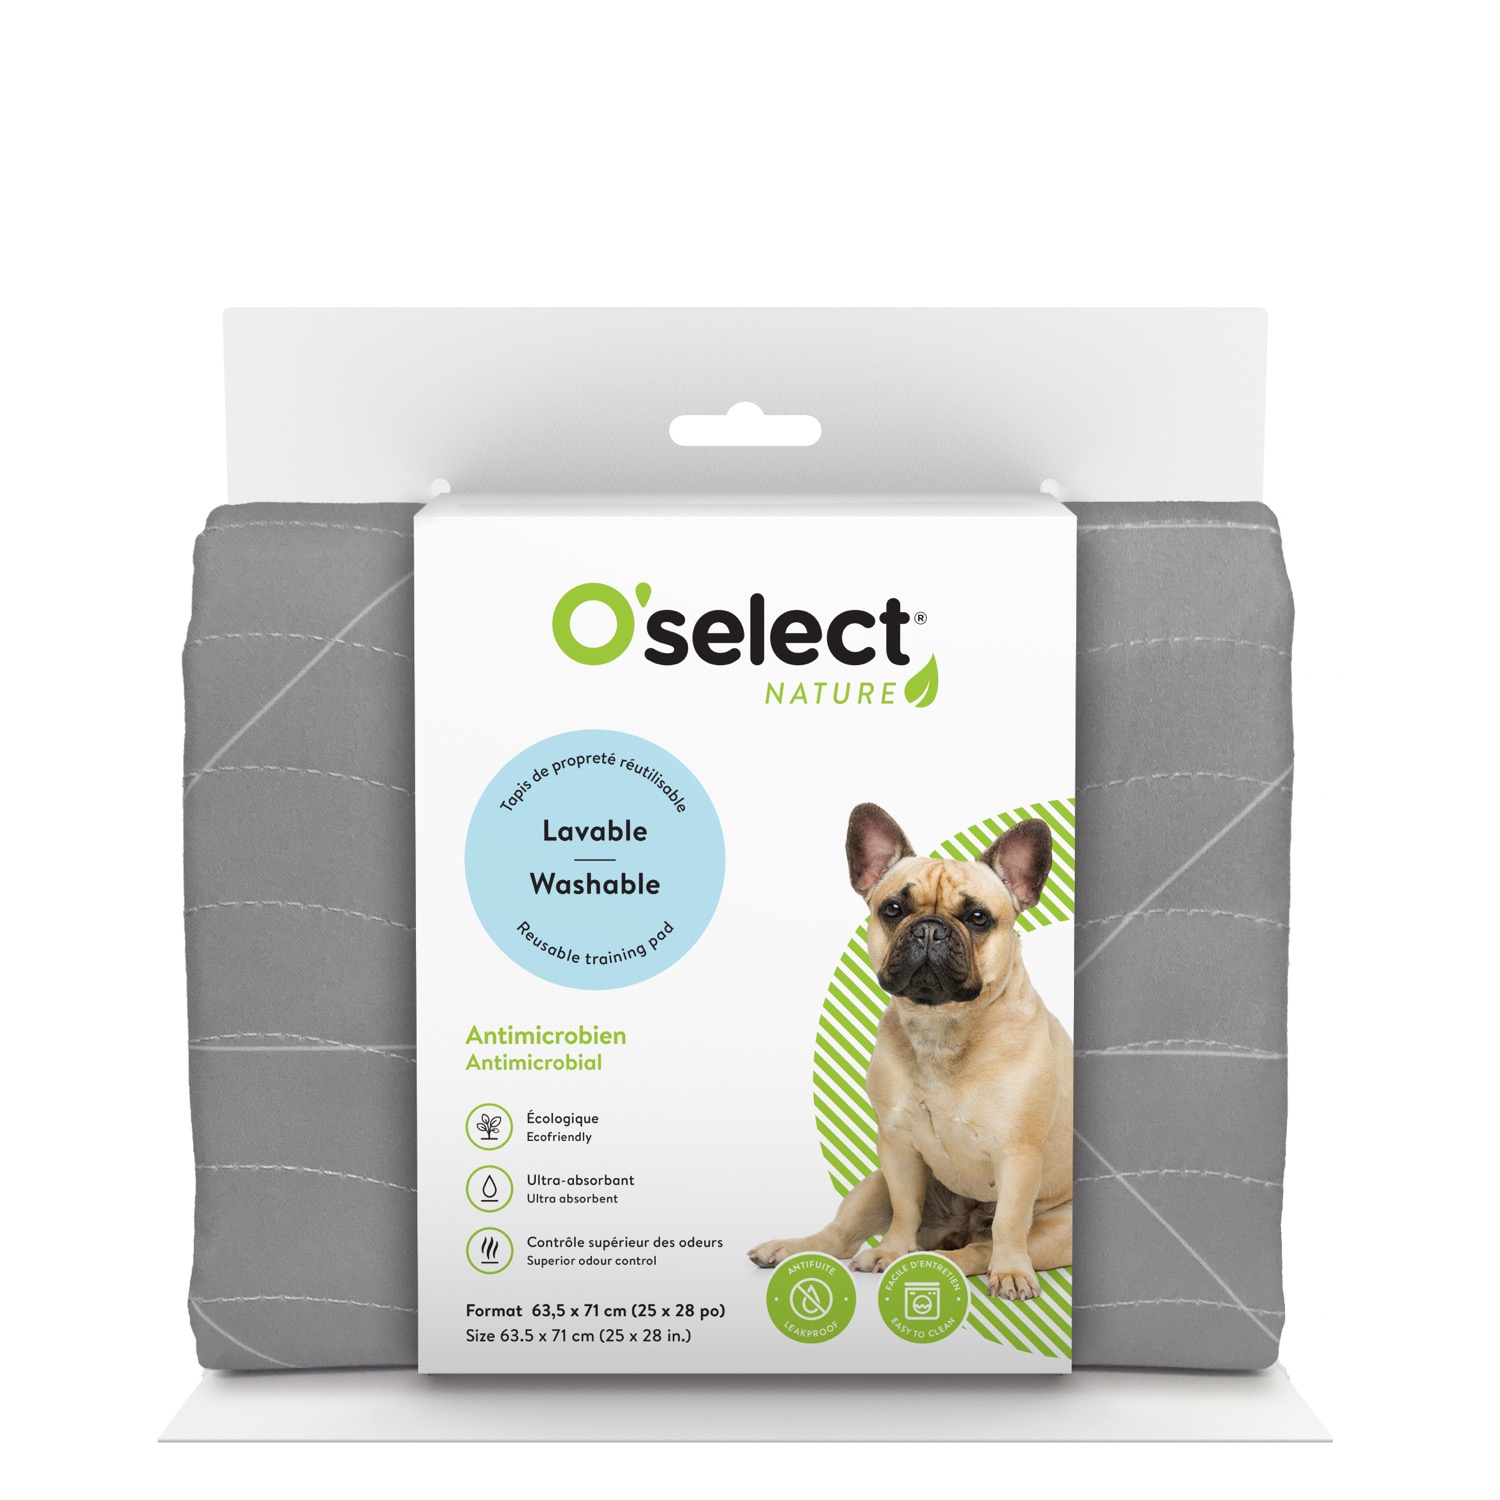 PoochPad - Tapis de propreté Absorbant Réutilisable pour chiens - Petit